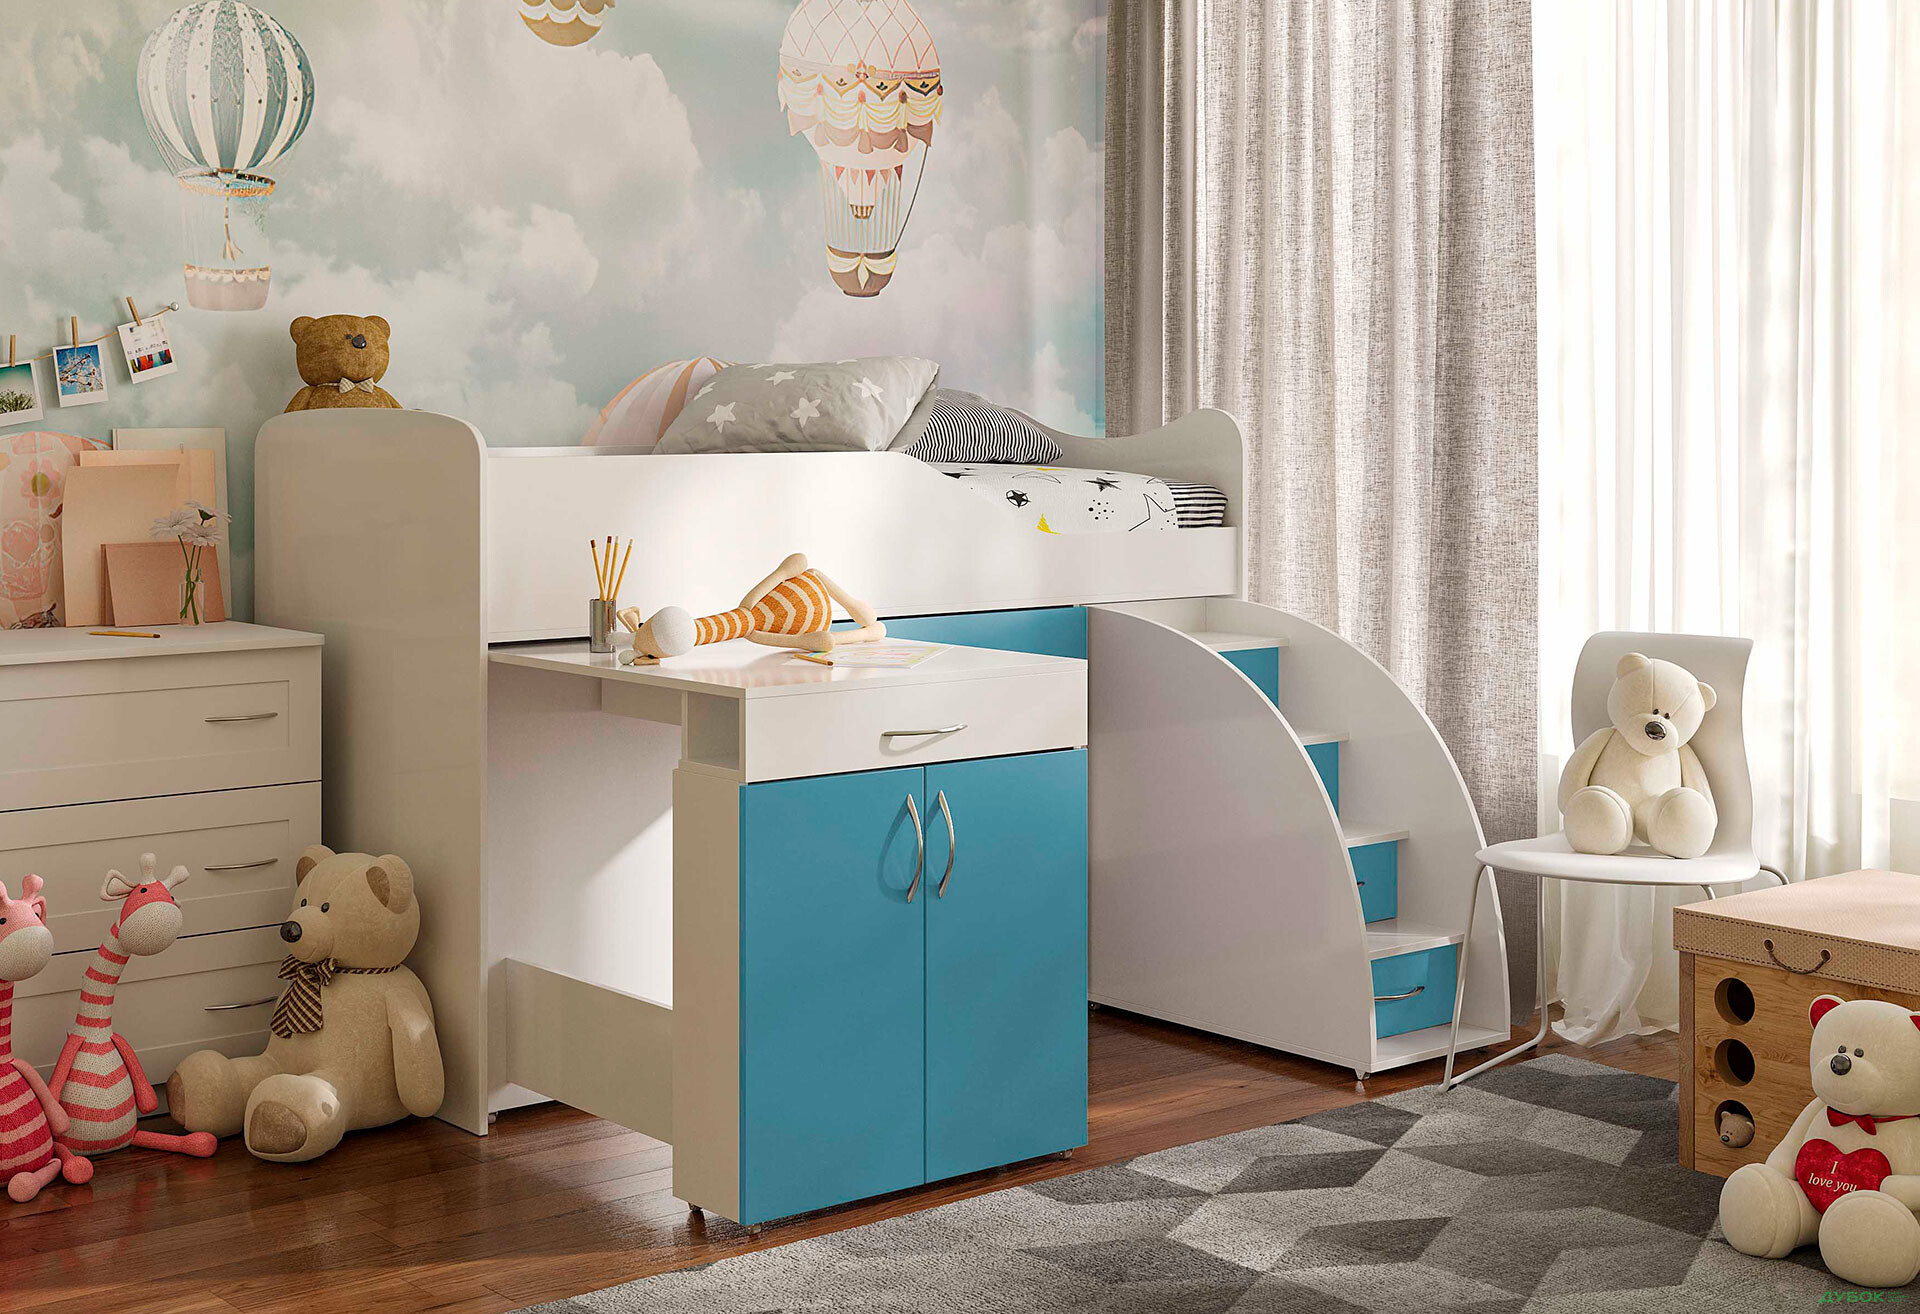 Фото 28 - Кровать-горка Виорина Деко 5 80х180 см с ящиками, лестницами и столом